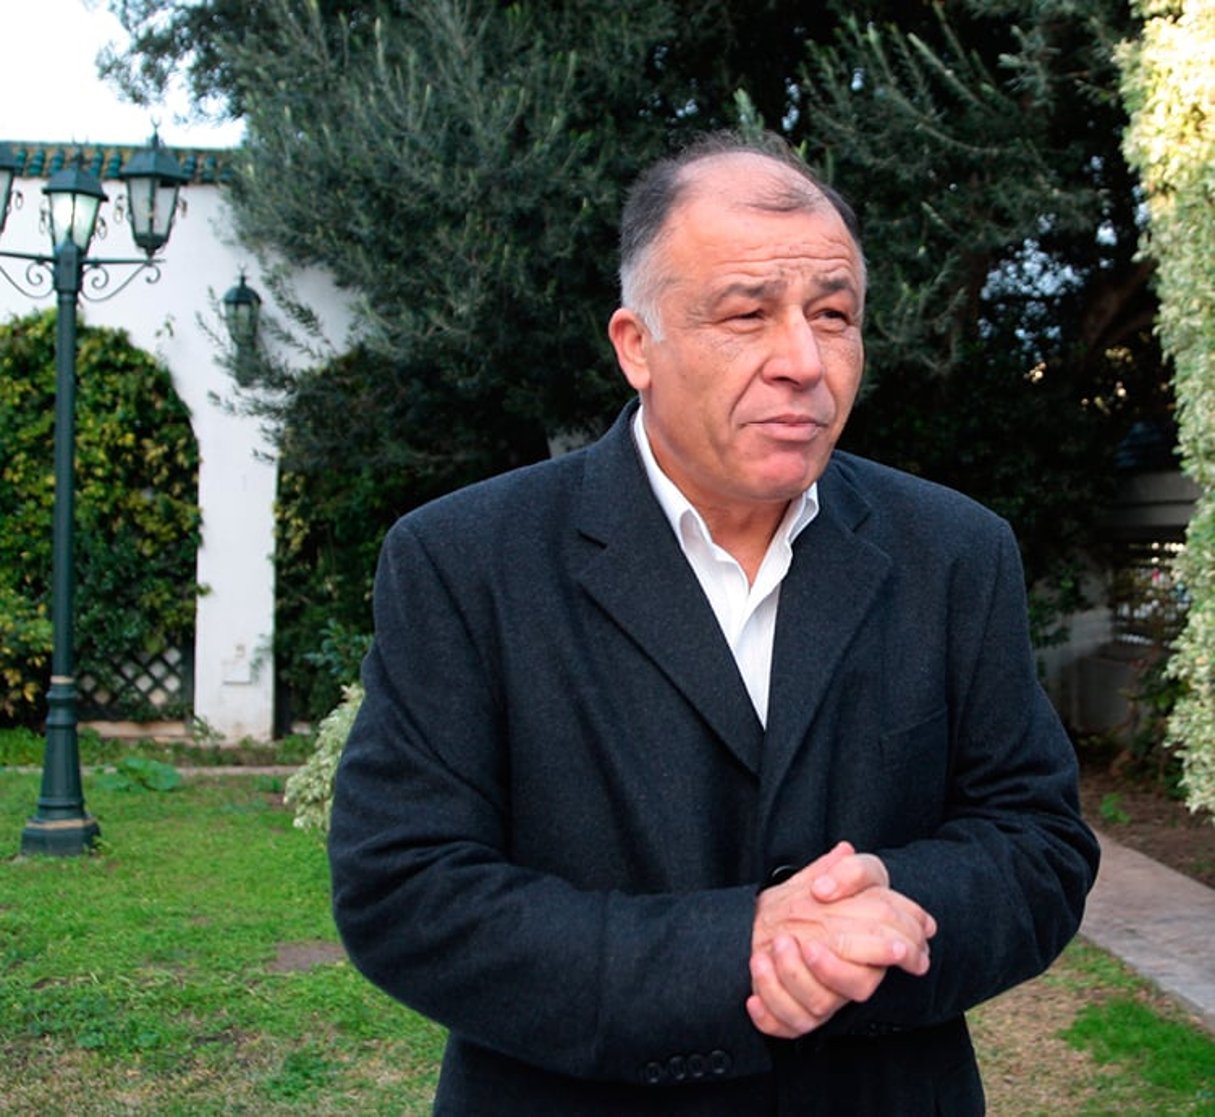 Néji Jelloul, le ministre tunisien de l’Éducation a rejoint Nidaa Tounes en février 2014. © Hichem